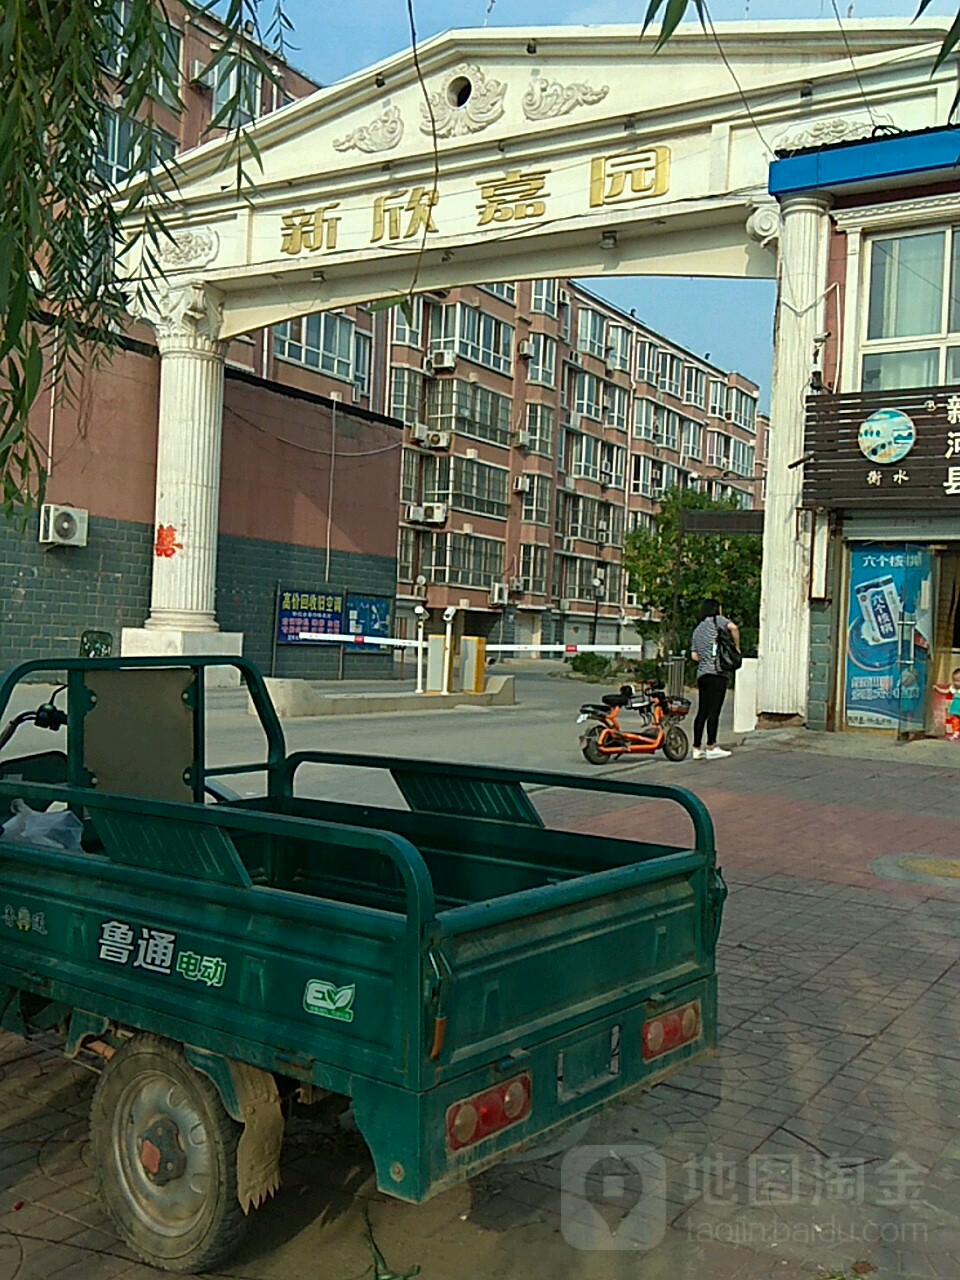 邢台市新河县富强街与新华路交叉路口往北约180米